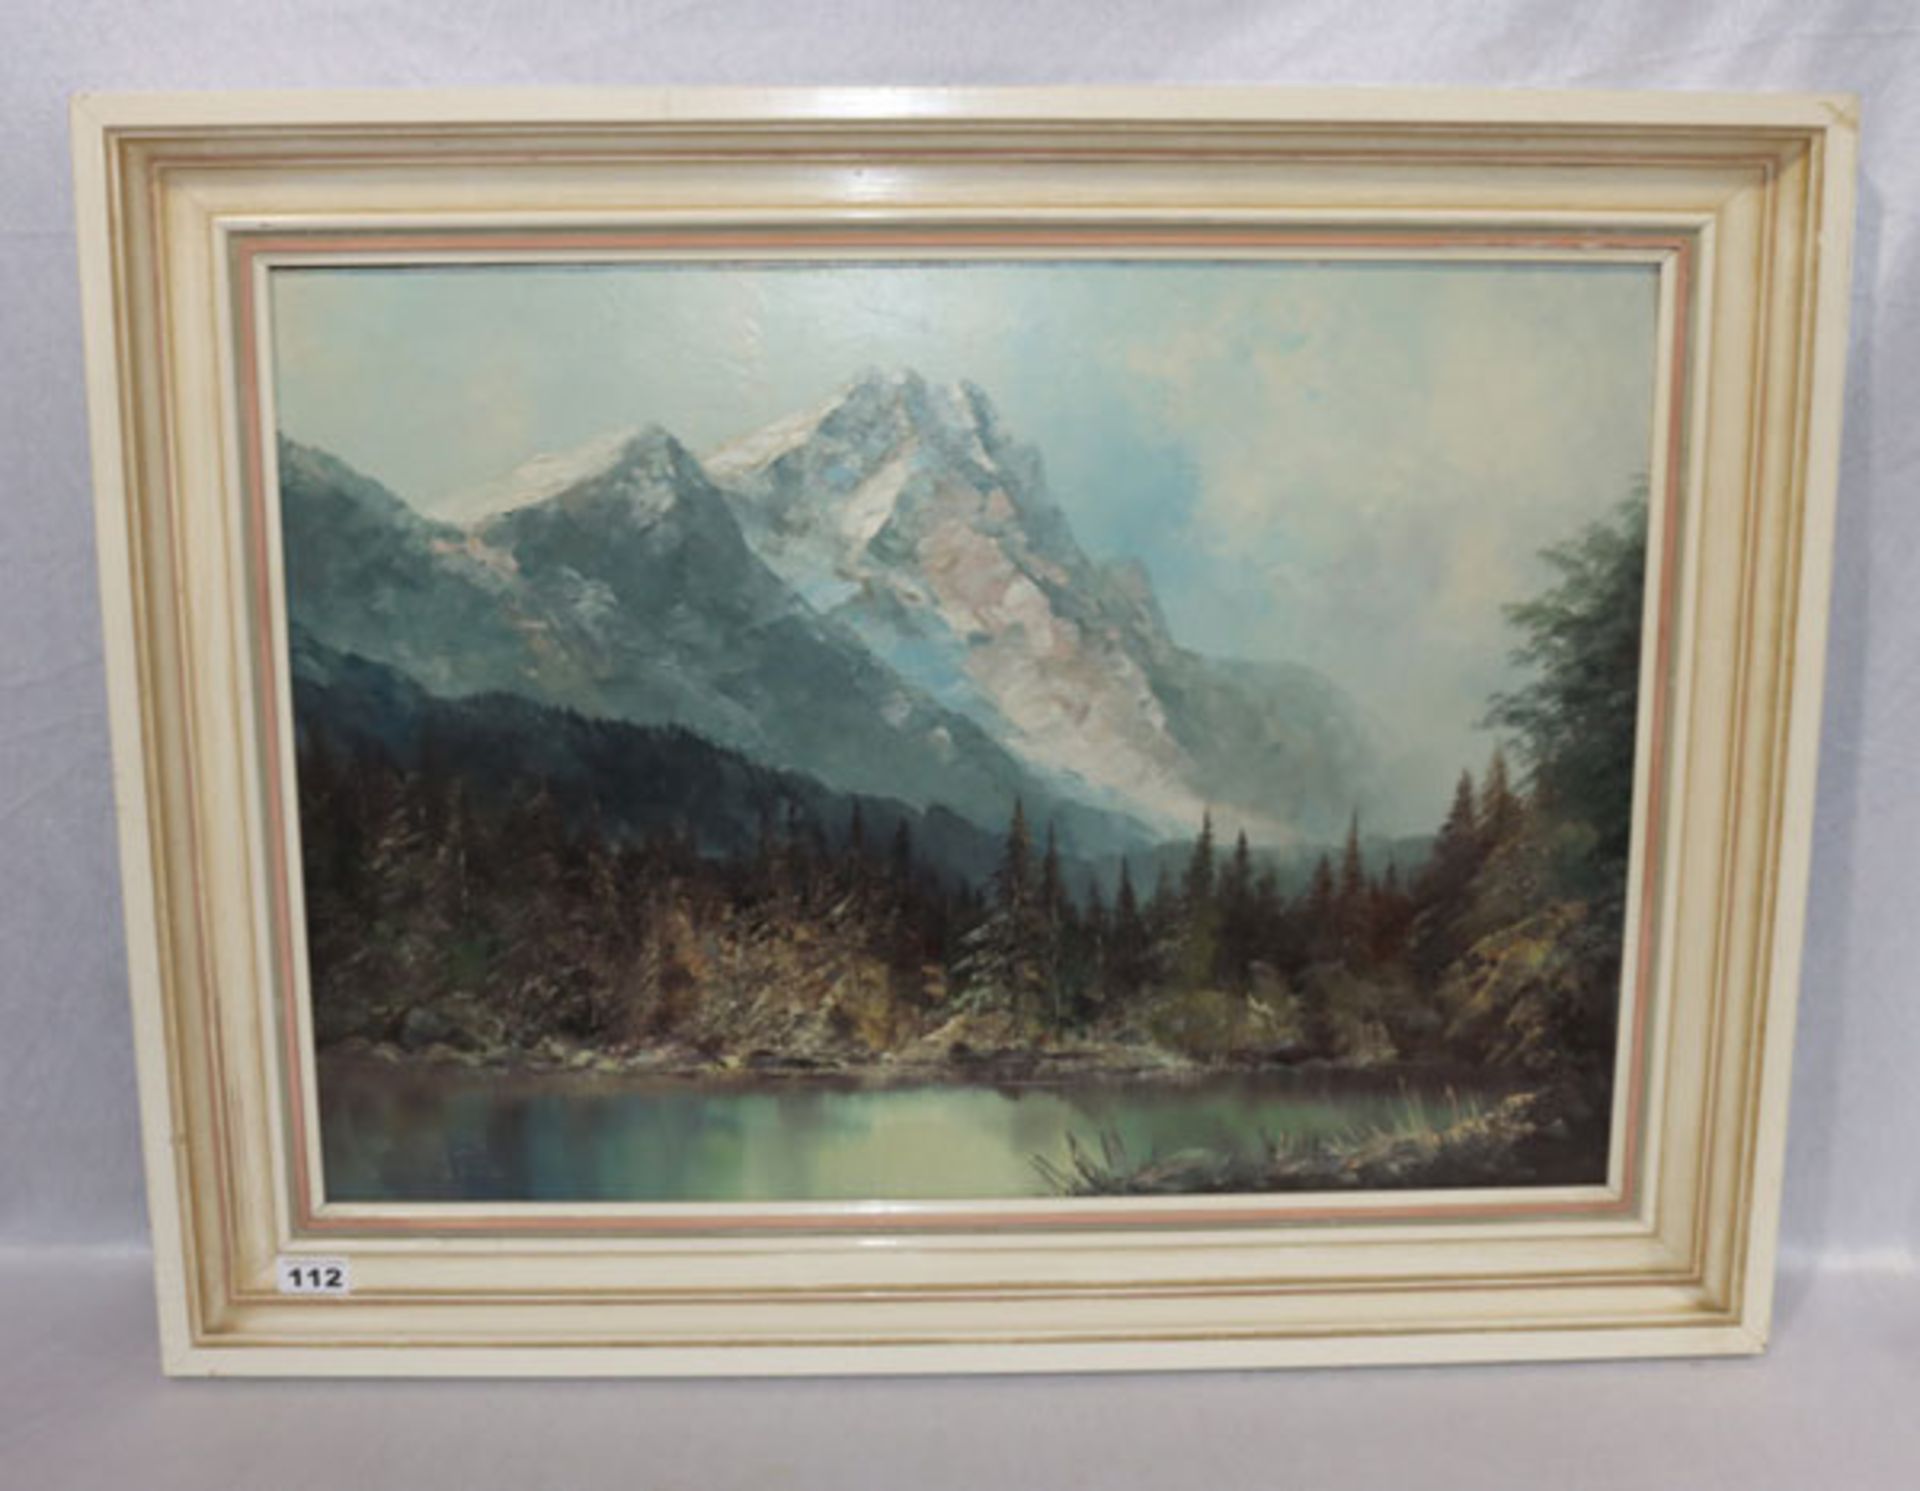 Gemälde ÖL/Hartfaser 'Badersee mit Zugspitze', signiert Keizers, der Maler lebte um 1970 zeitweise